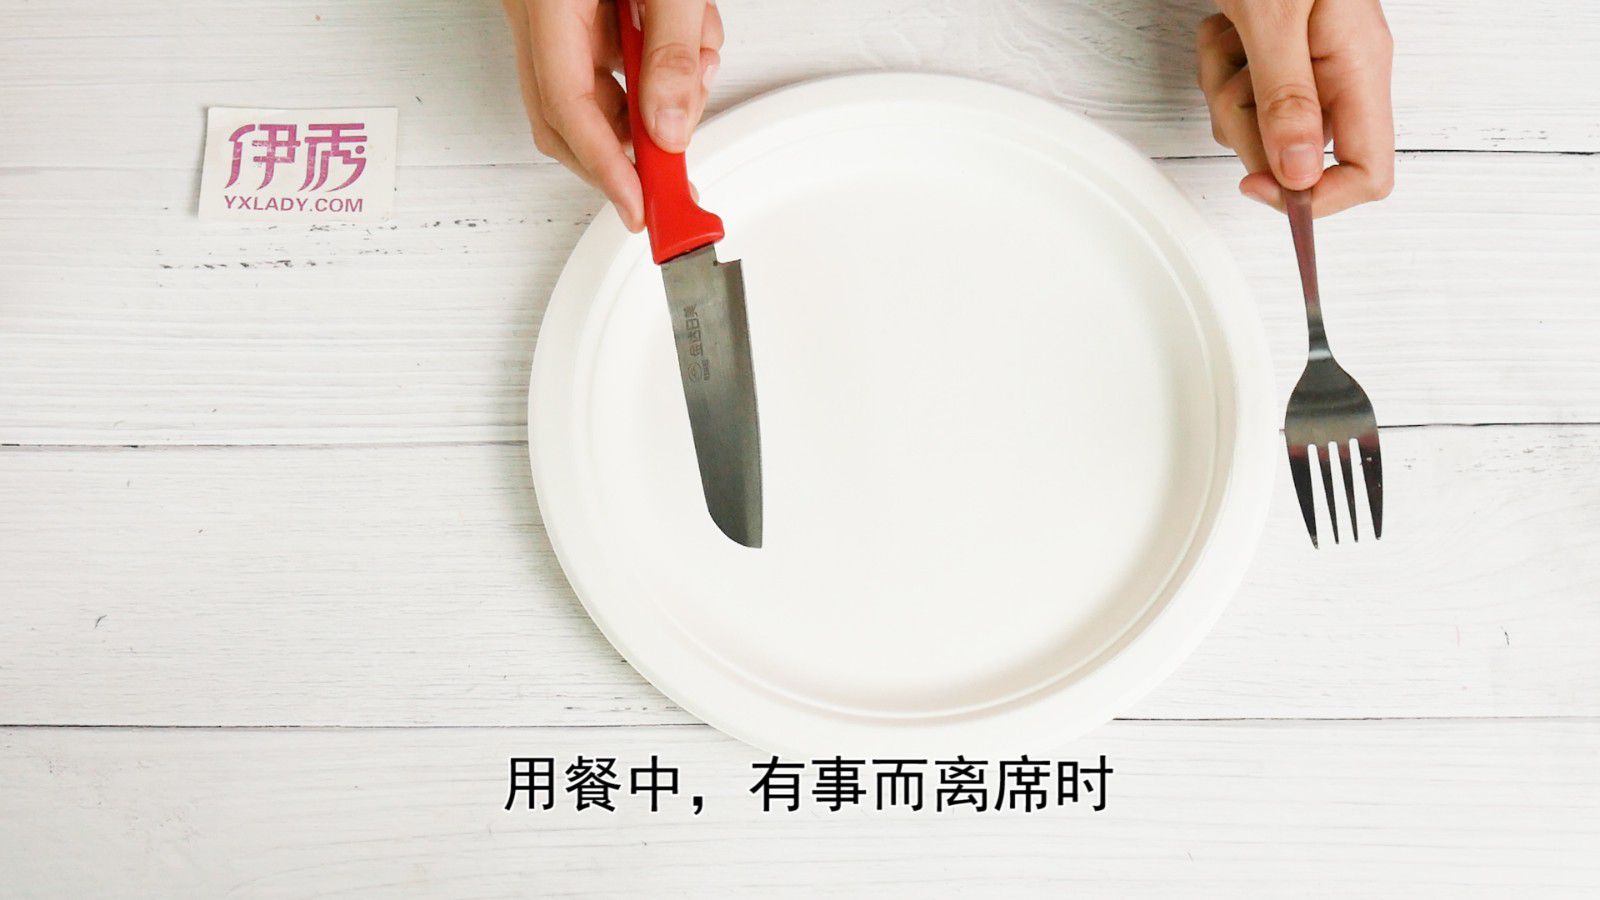 西餐刀叉拿法 如何优雅的摆放刀叉呢_伊秀视频|yxlady.com